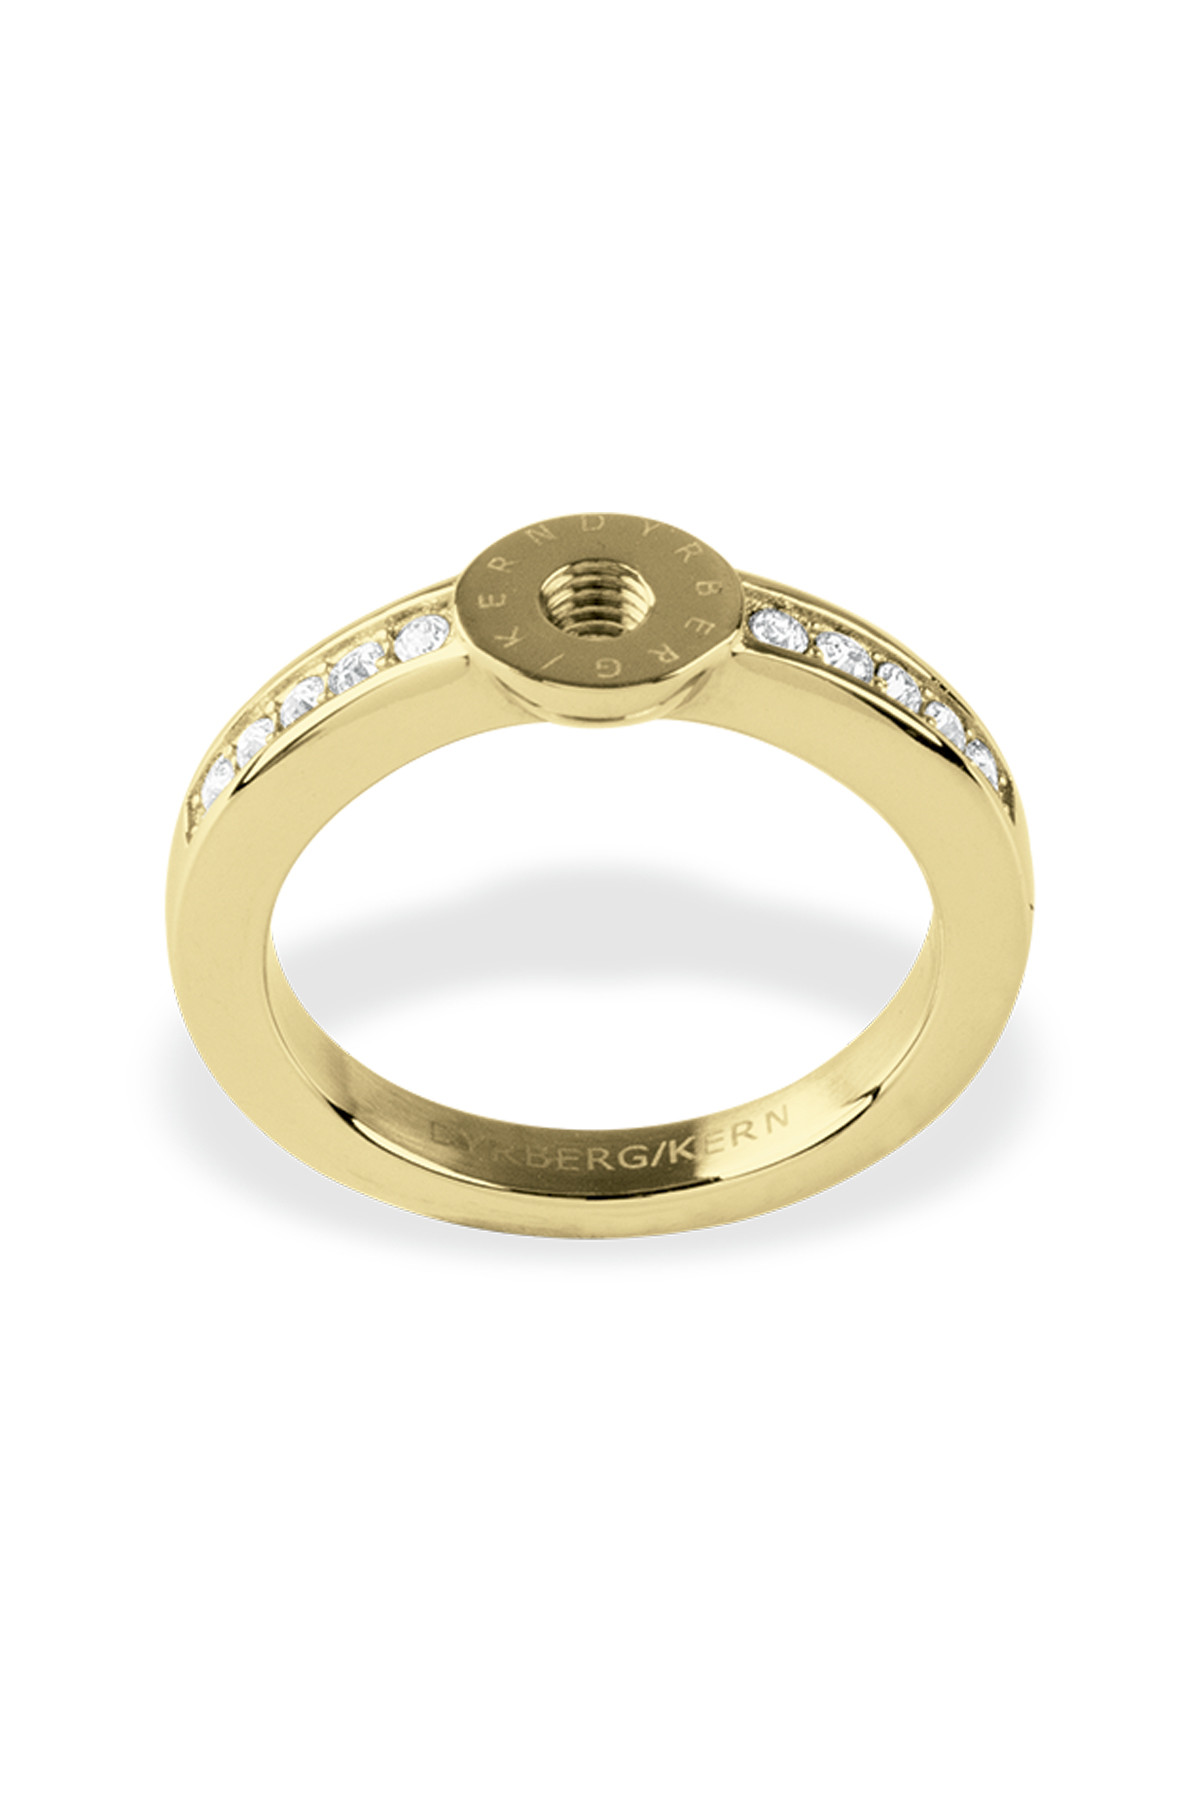 Billede af Dyrberg/Kern Ring Ring, Farve: Guld, Størrelse: 0/48, Dame